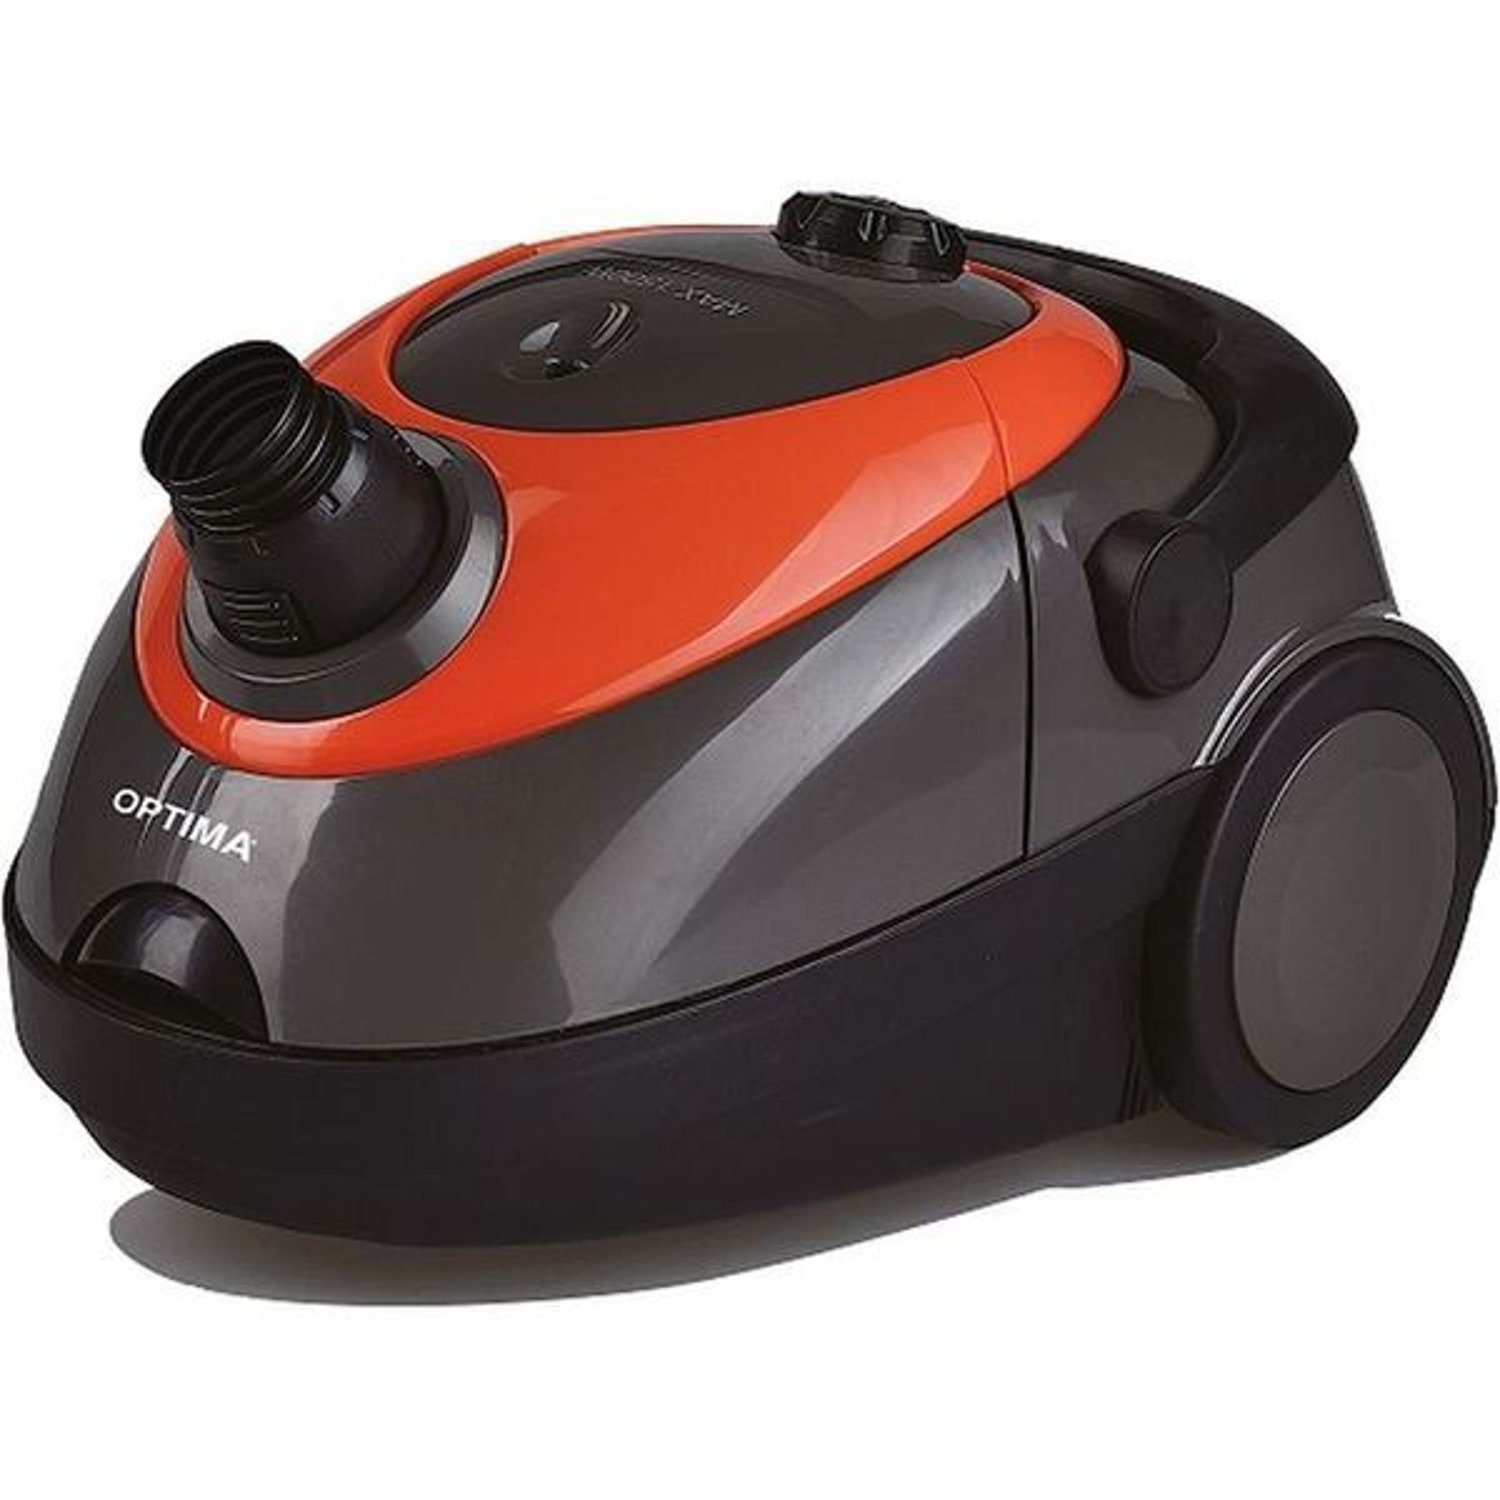 Optima Vacuum Cleaner Vc1400